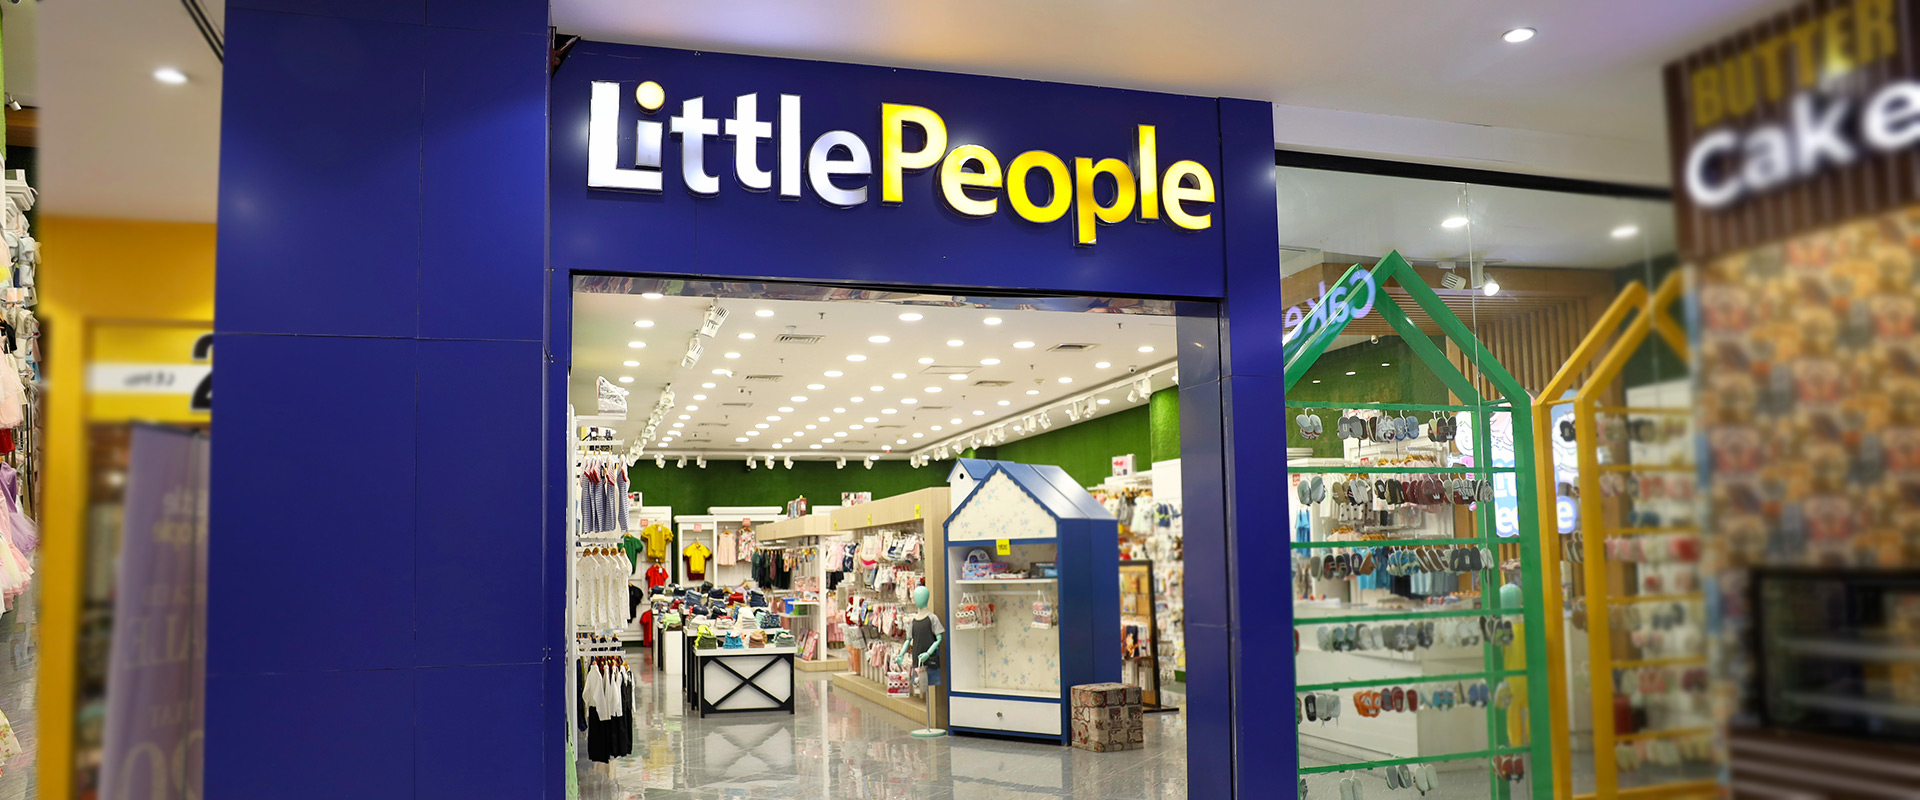 little-people-5